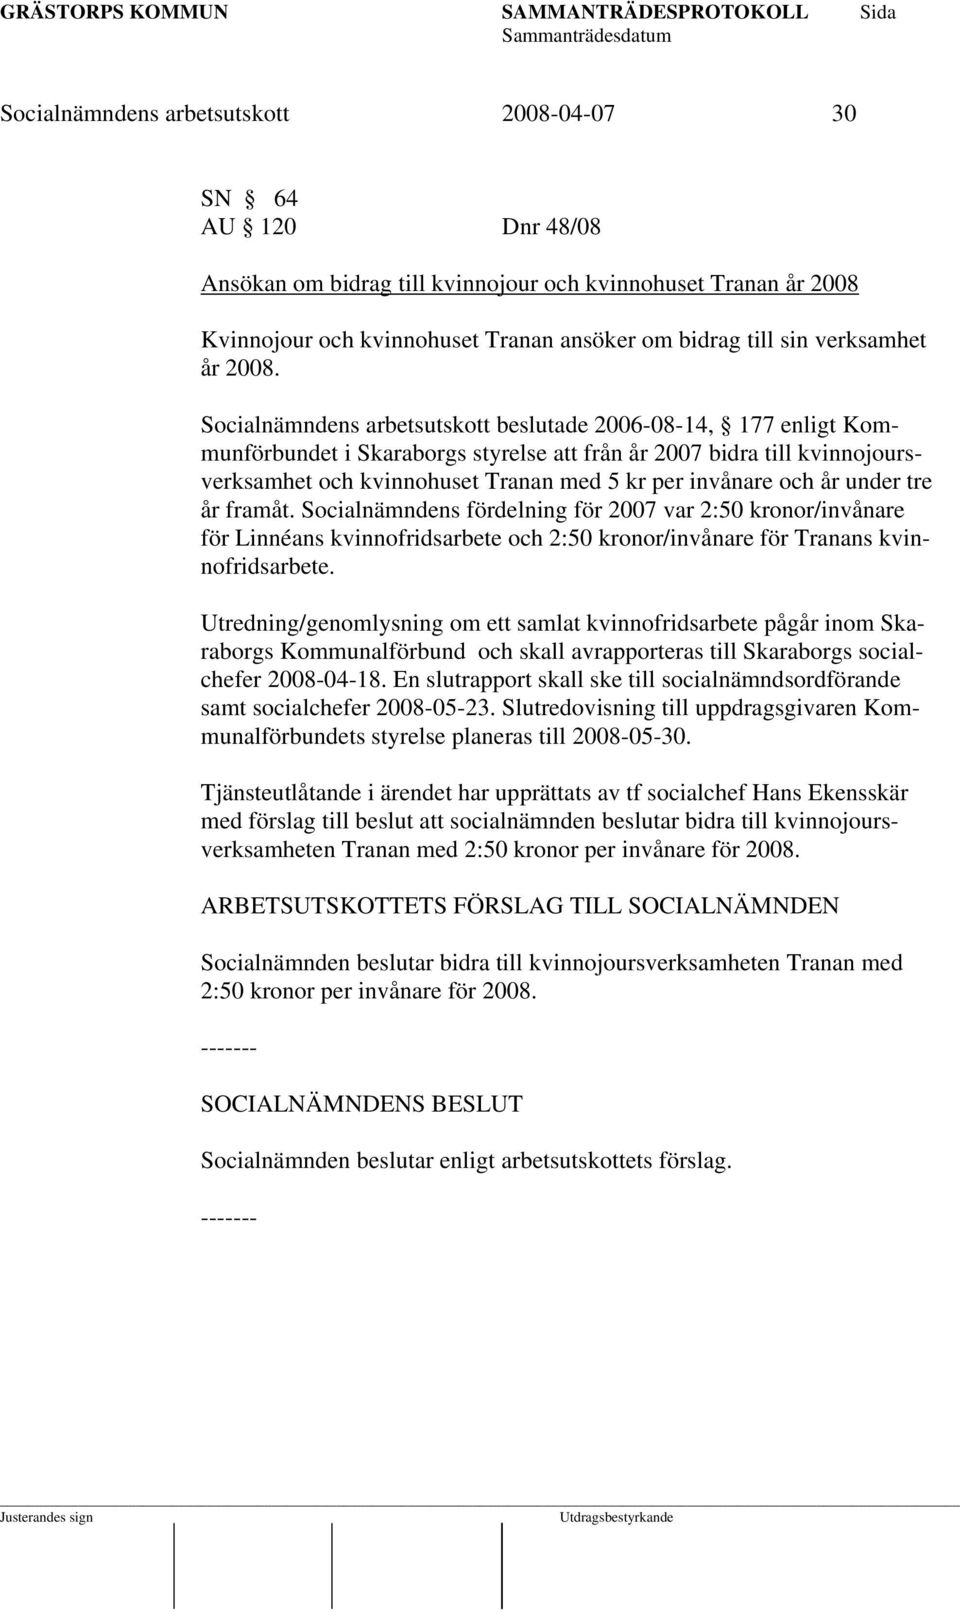 Socialnämndens arbetsutskott beslutade 2006-08-14, 177 enligt Kommunförbundet i Skaraborgs styrelse att från år 2007 bidra till kvinnojoursverksamhet och kvinnohuset Tranan med 5 kr per invånare och